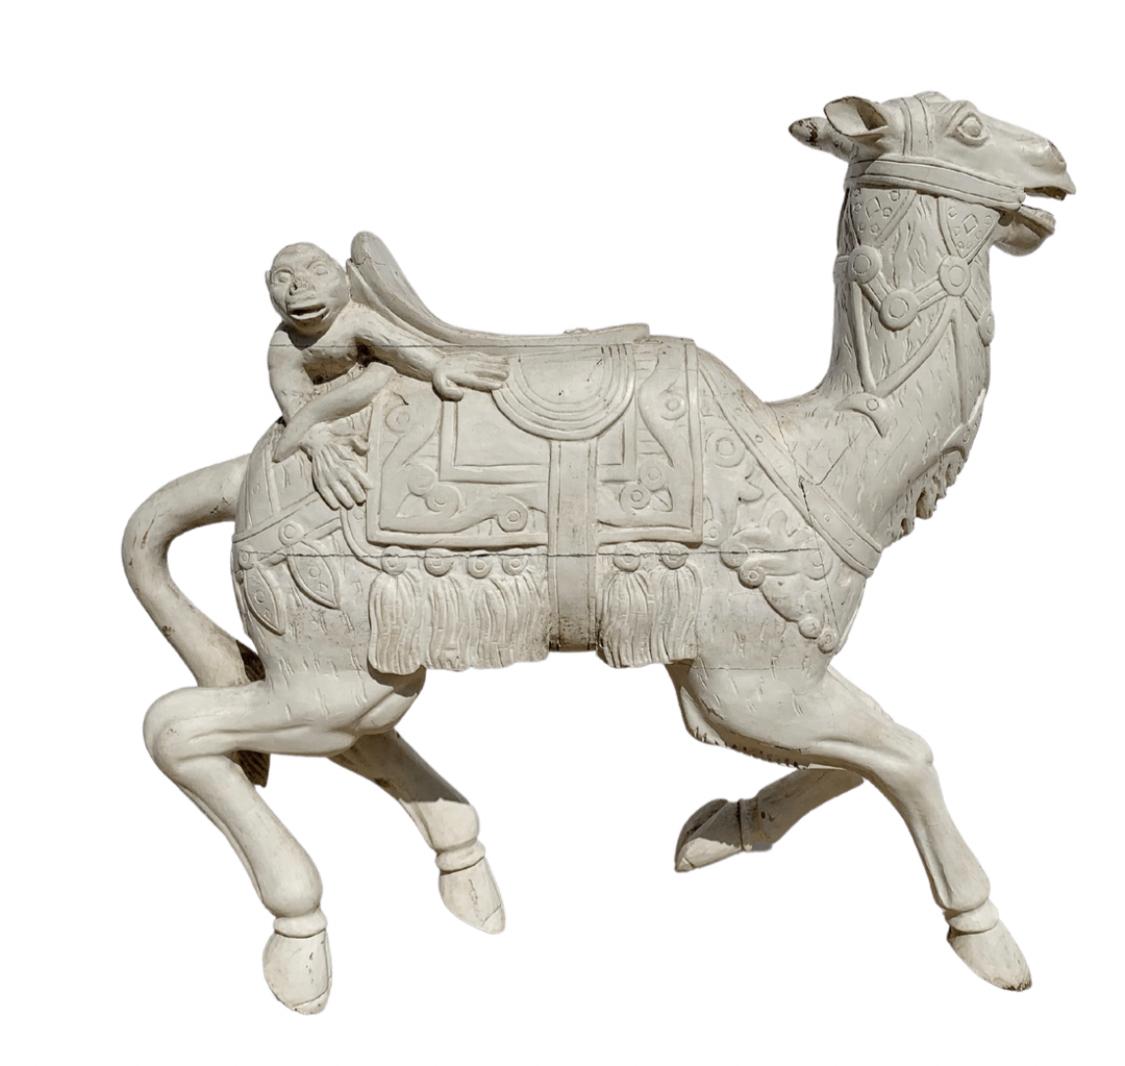 Rare chameau de carrousel en bois sculpté avec un singe sur son dos.
Dans le style de Charles Loof.
Nécessite peu de restauration.
Fait partie d'une collection privée depuis plus de 40 ans.